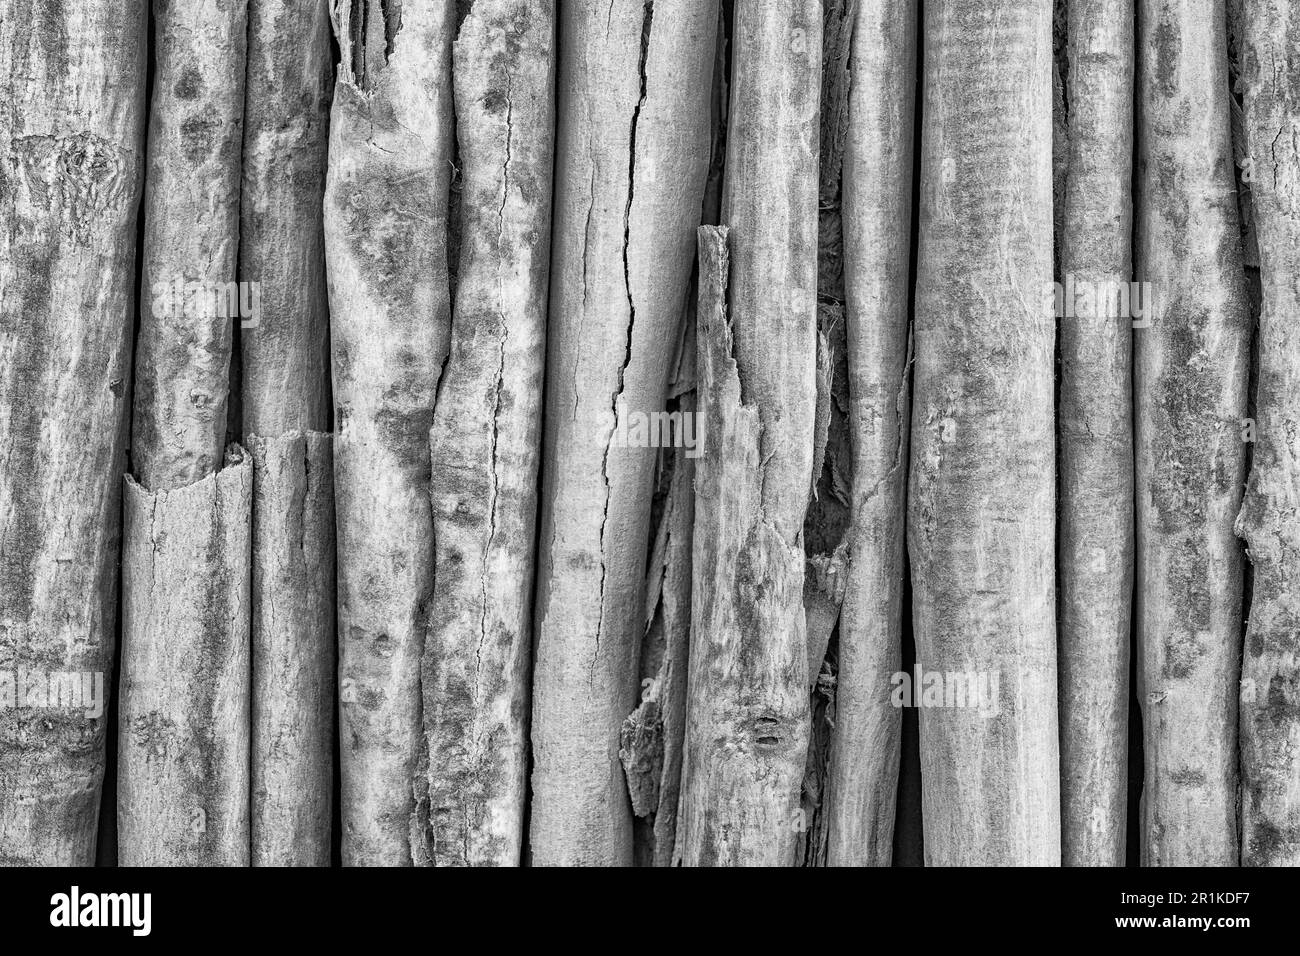 Immagine bianco-nero di cannella arrotolata o arricciata / corteccia verum Cinnamomum dall'albero delle spezie cresciuto in Sri Lanka / Ceylon. Ha molti benefici per la salute. Foto Stock